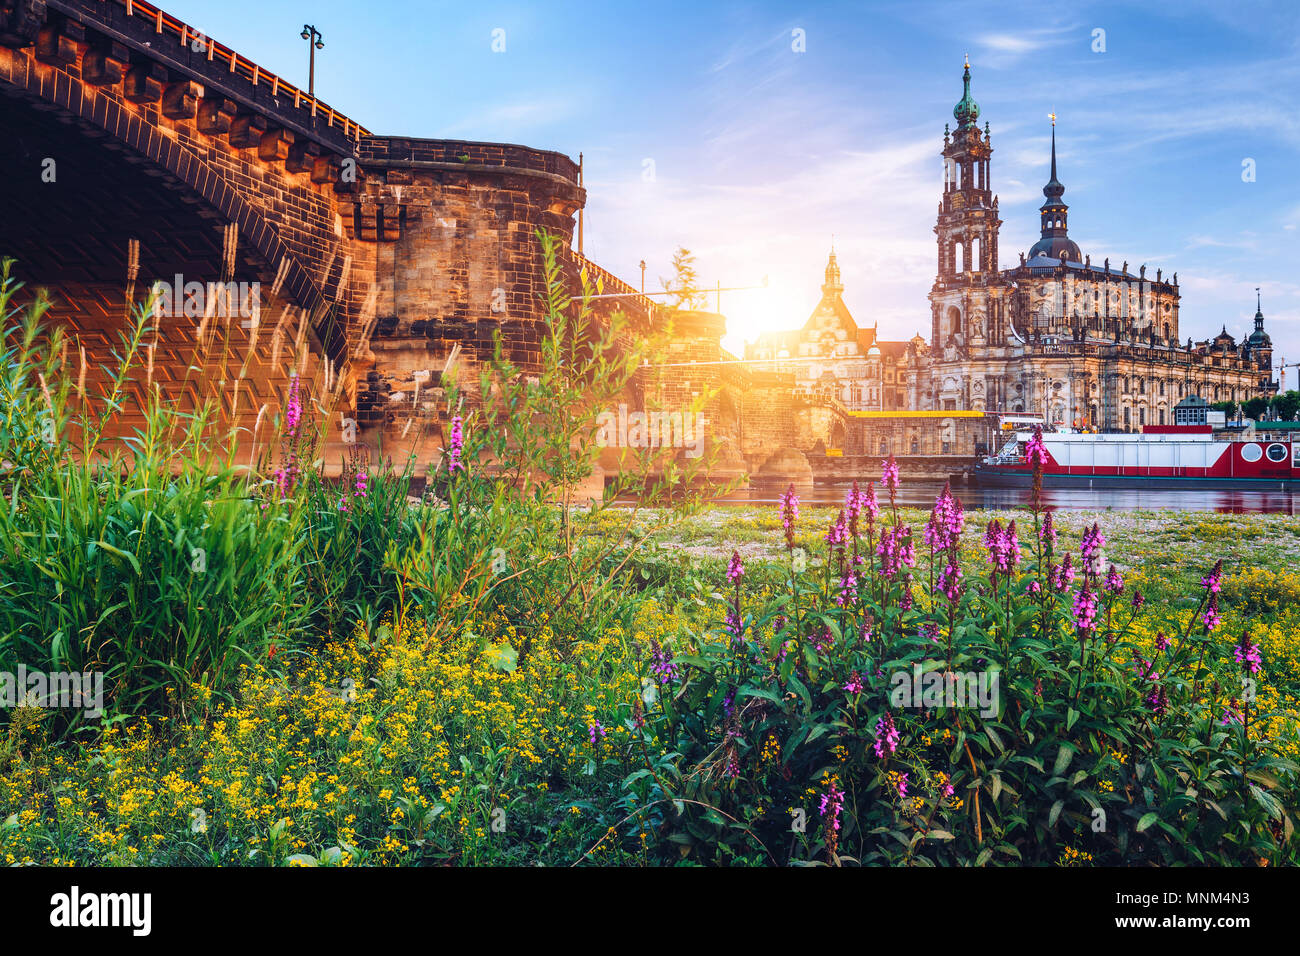 Augusto Puente (Augustusbrucke) y la Catedral de la Santísima Trinidad (Hofkirche) sobre el río Elba en Dresden, Alemania, en el Estado federado de Sajonia. Foto de stock